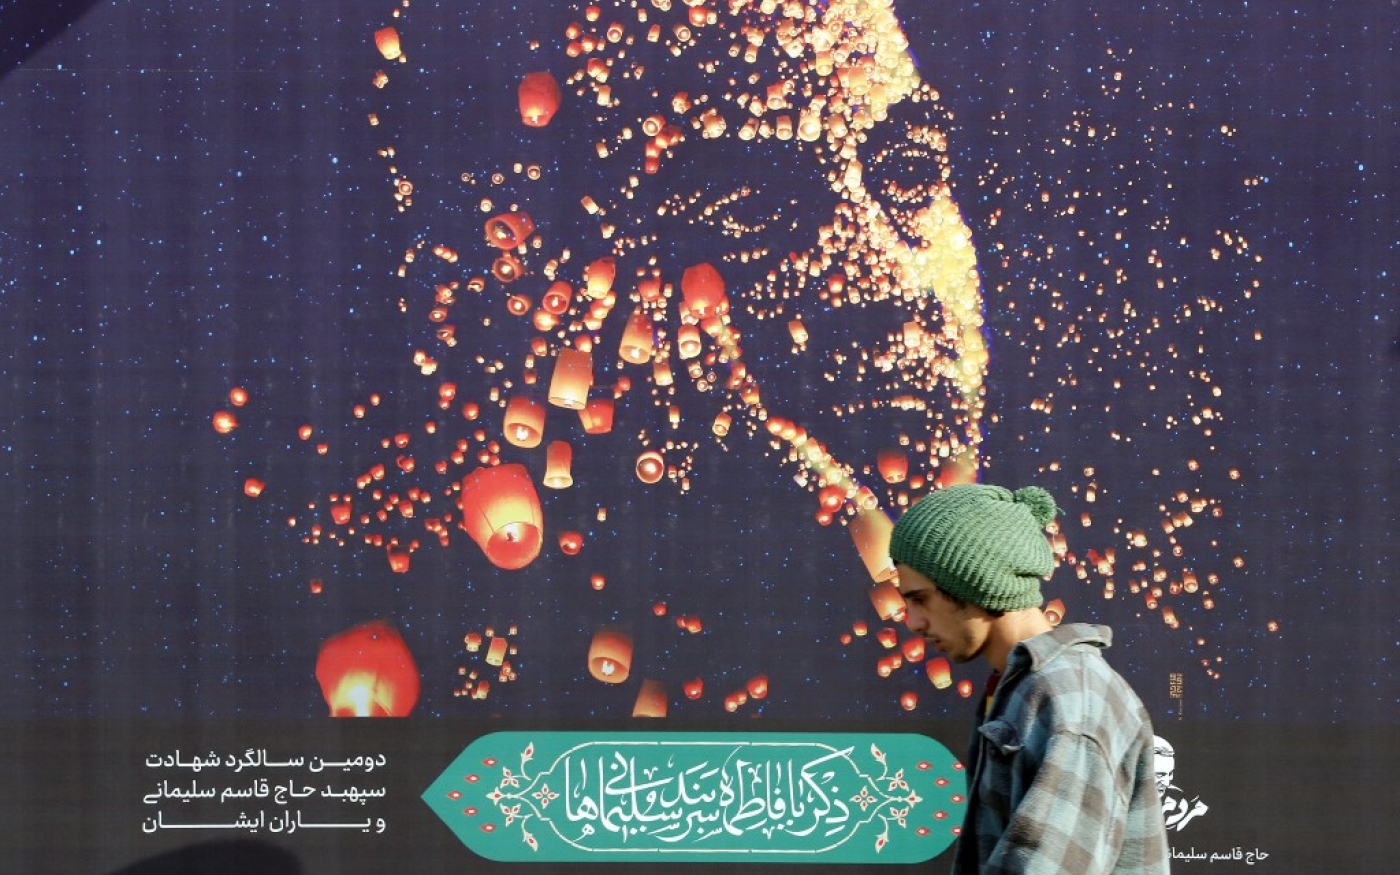 Un Iranien passe devant une affiche du général Qasem Soleimani, assassiné le 3 janvier 2020, sur ordre du président de l’époque Donald Trump, à Téhéran, le 31 décembre 2021 (AFP)